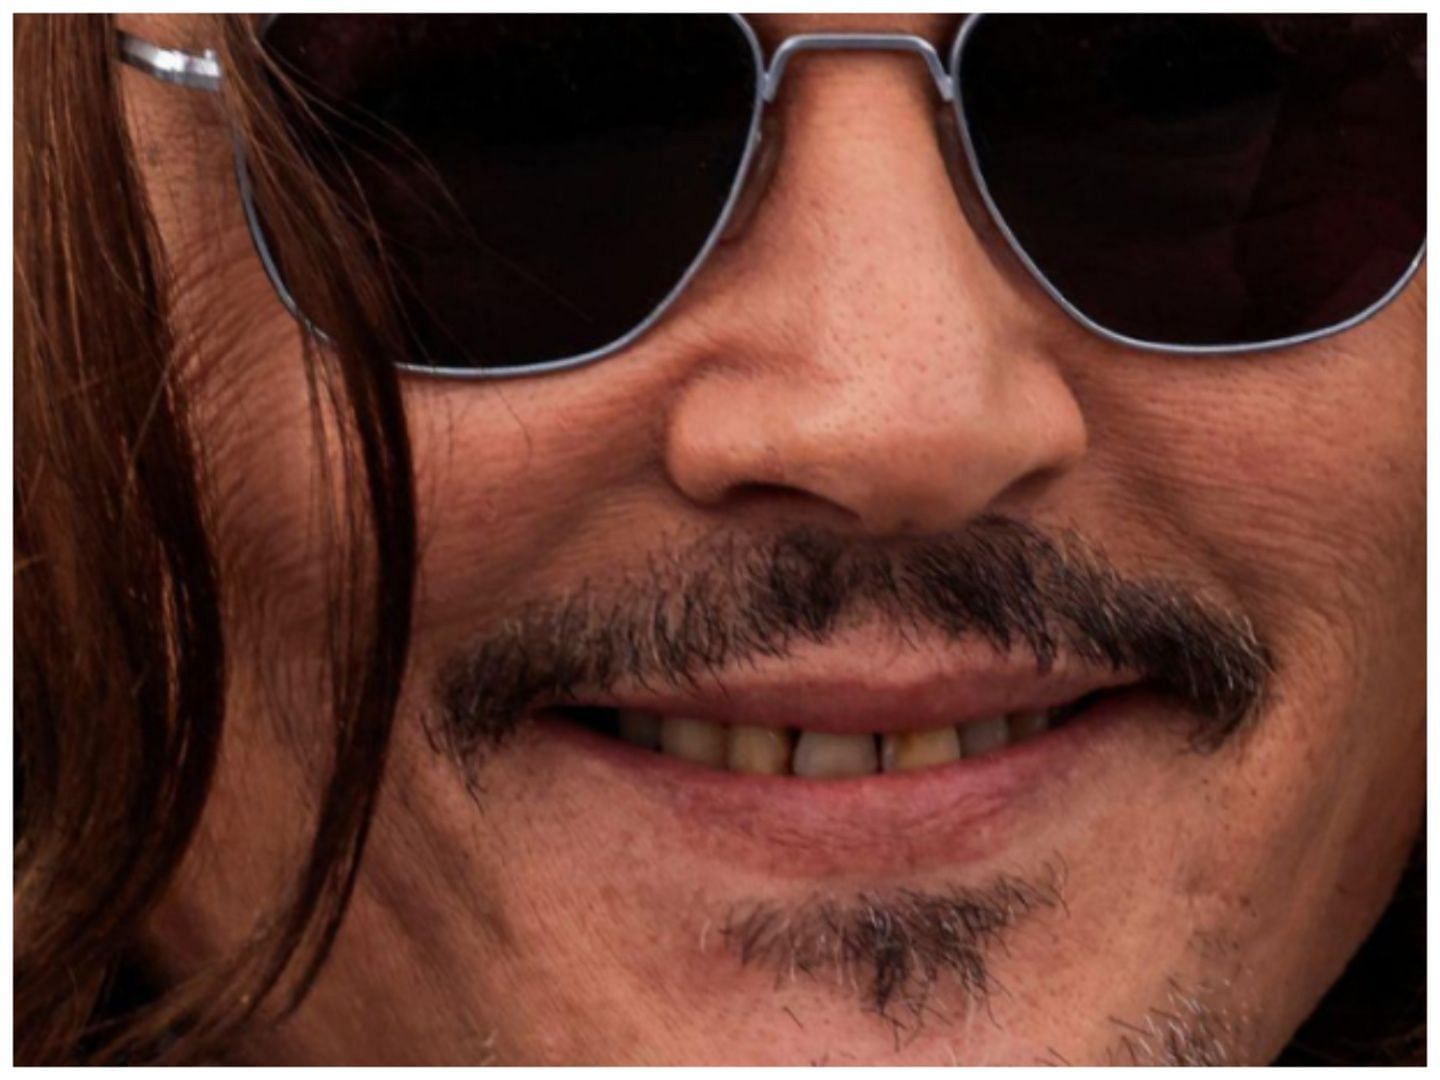 Johnny Depp (Image via IG @drcrow.dental)